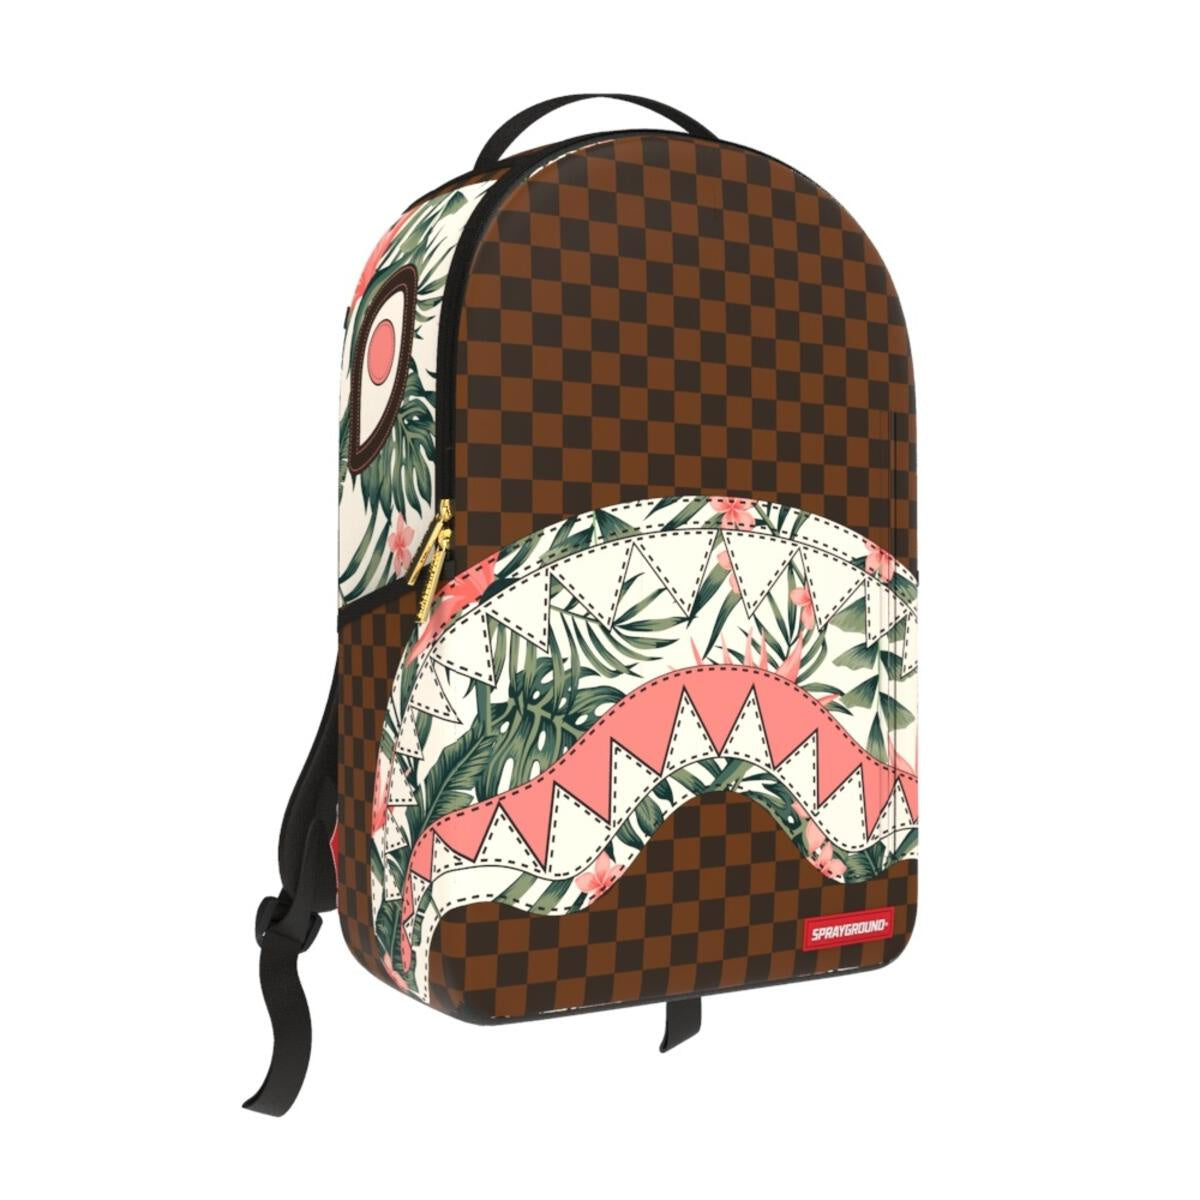 Sprayground X Louis Vuitton Backpack Price